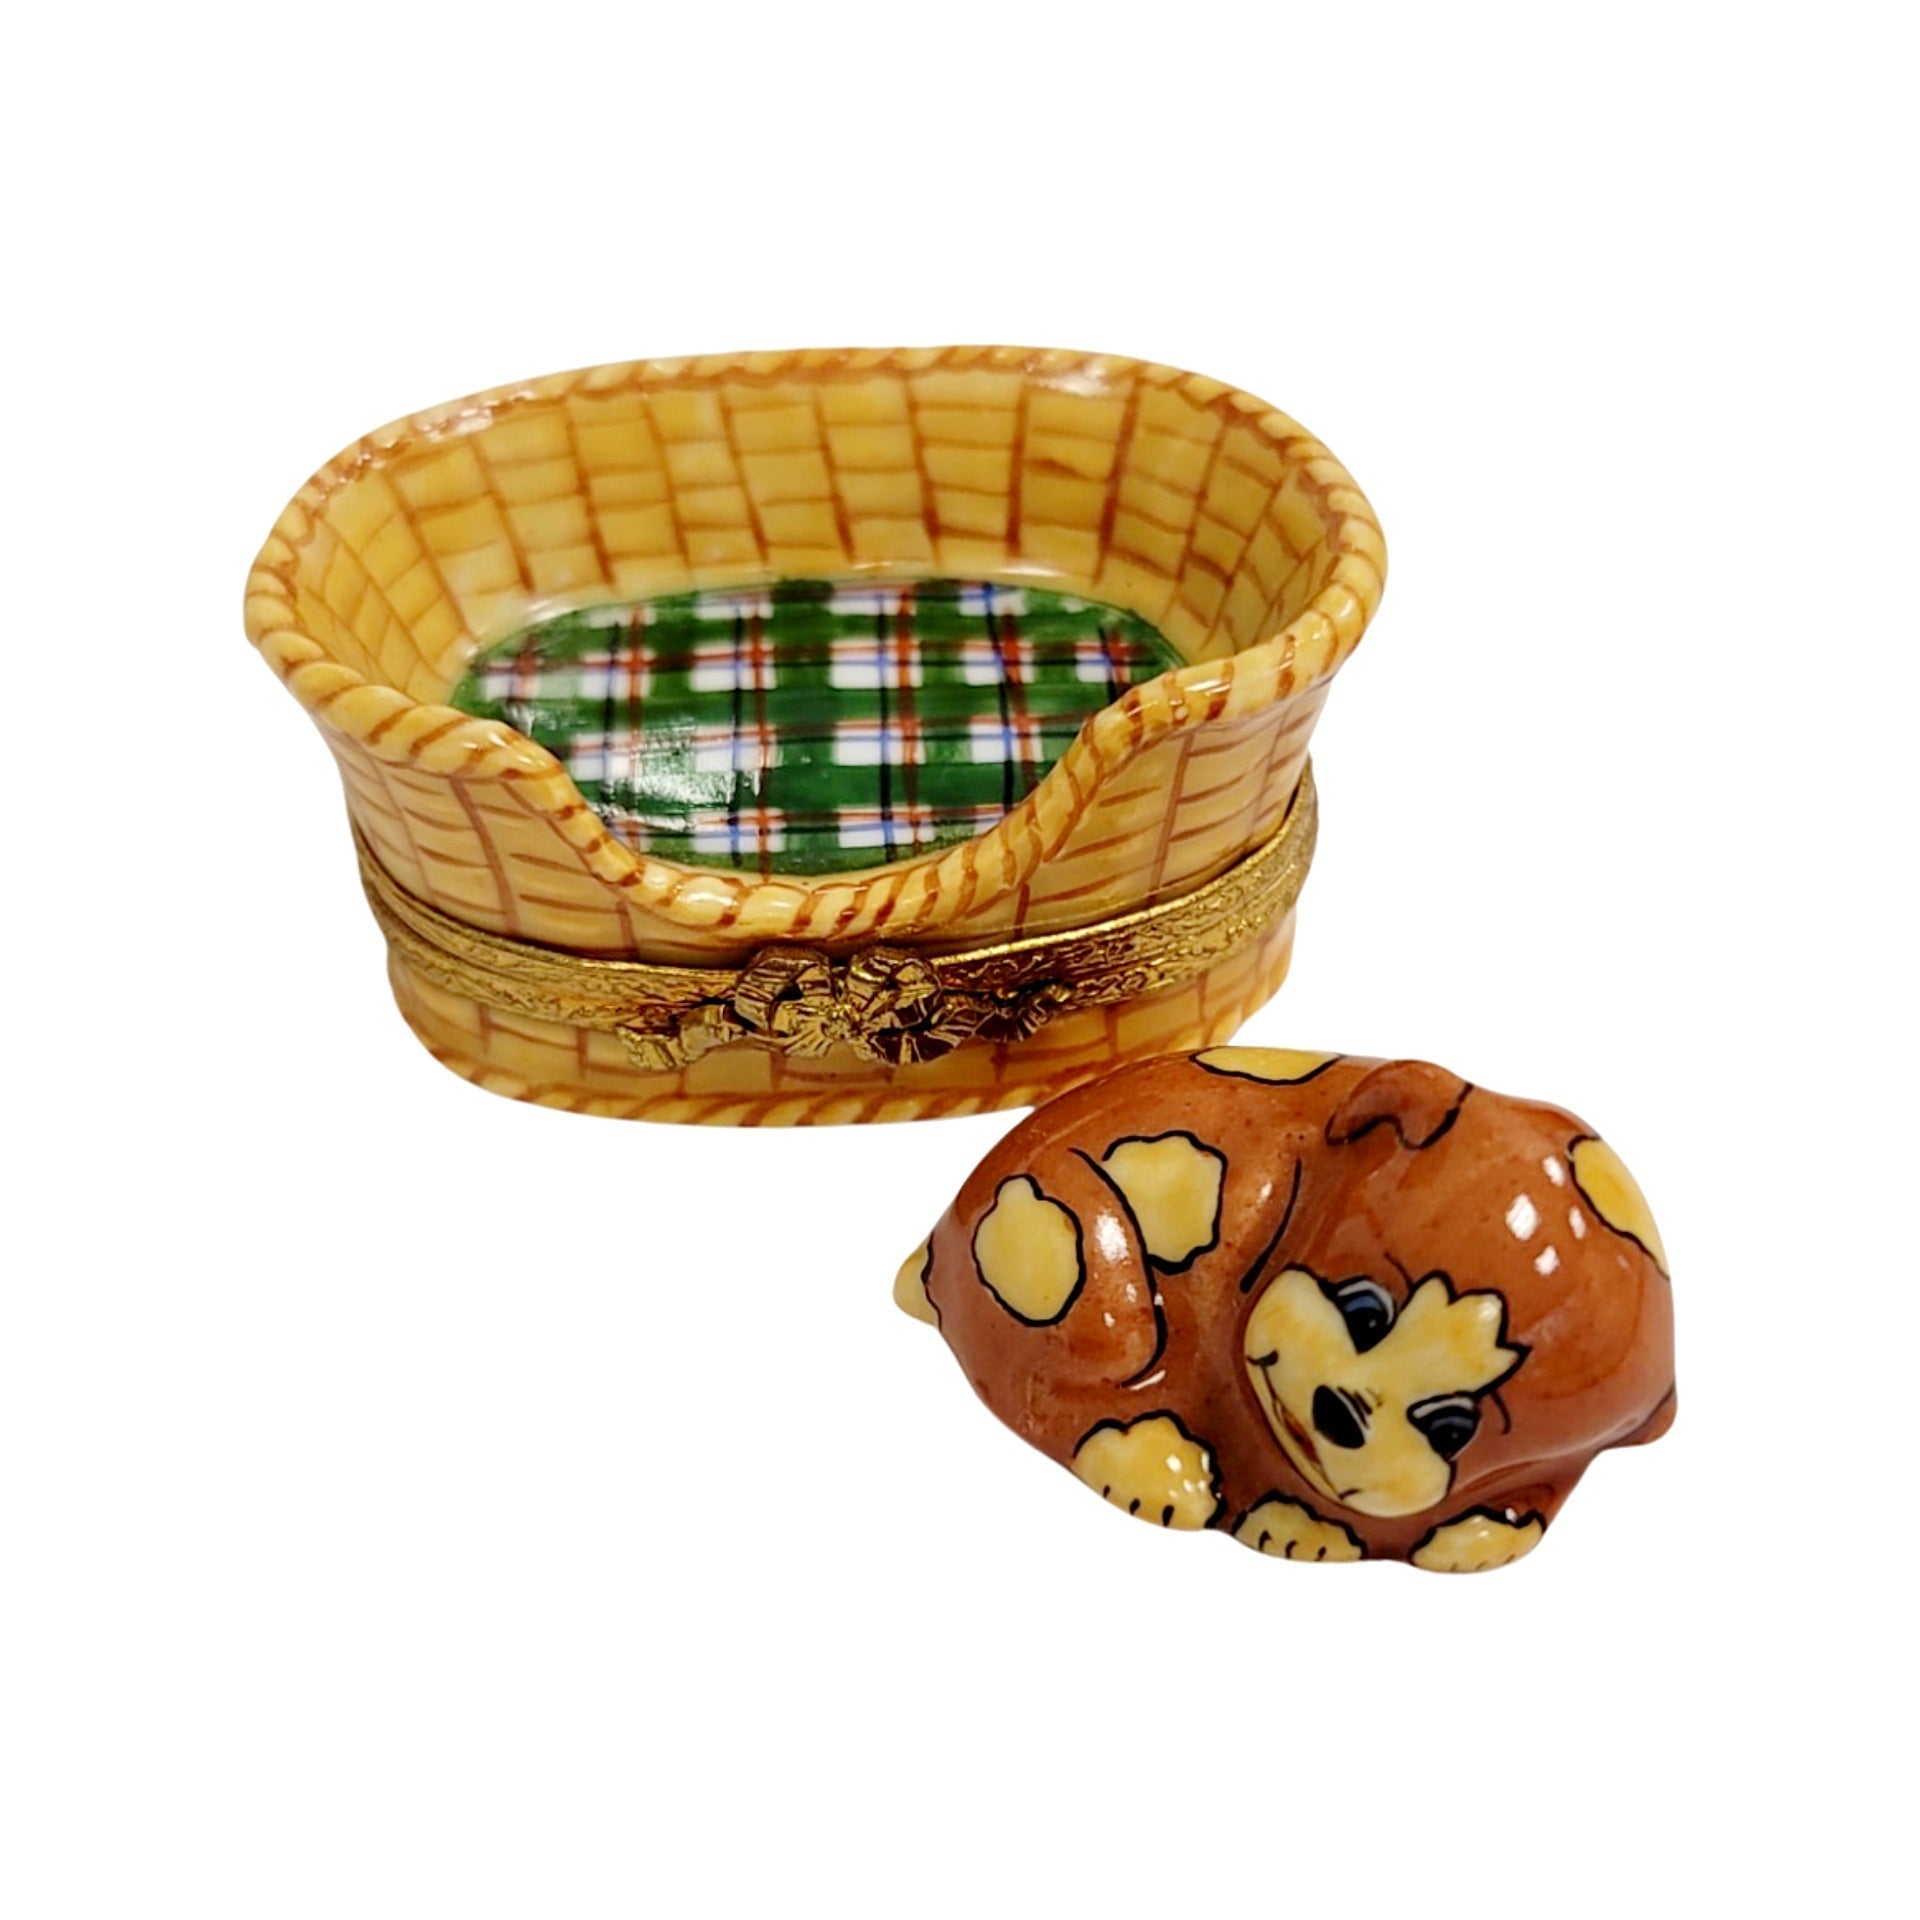 Dog in Brown Basket Porcelain Limoges Trinket Box